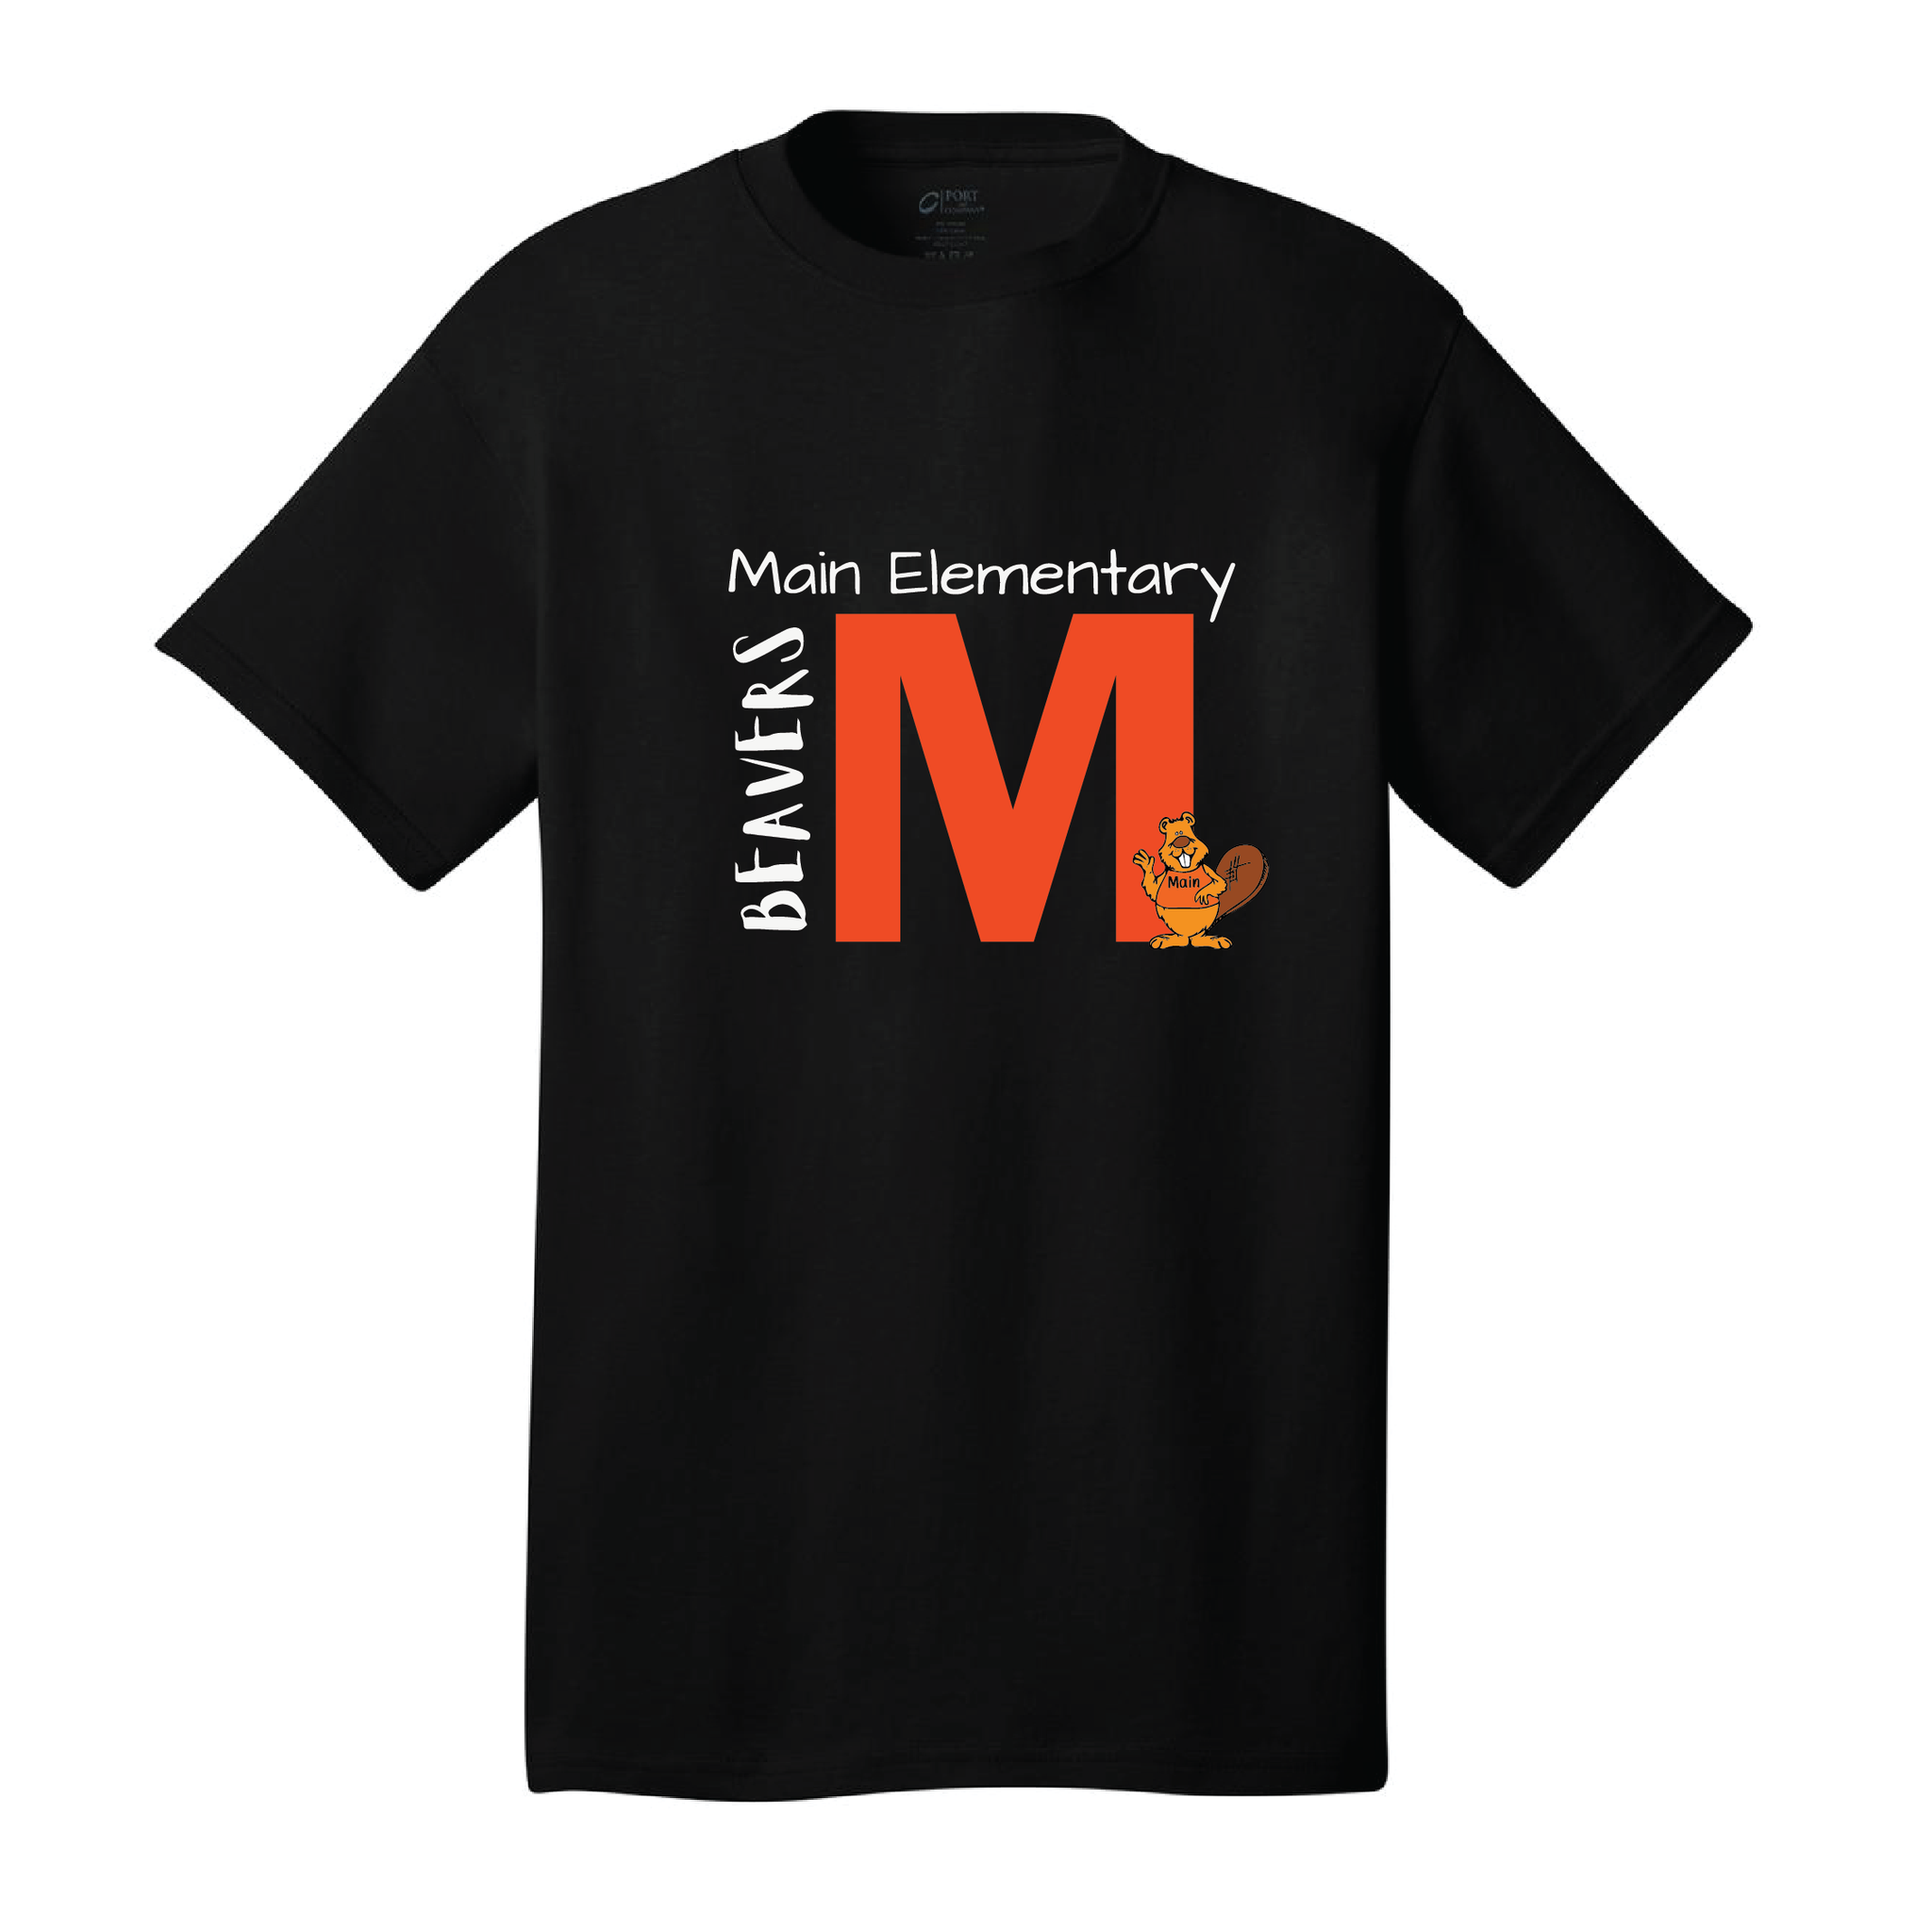 Main Elementary 'M' T-Shirt